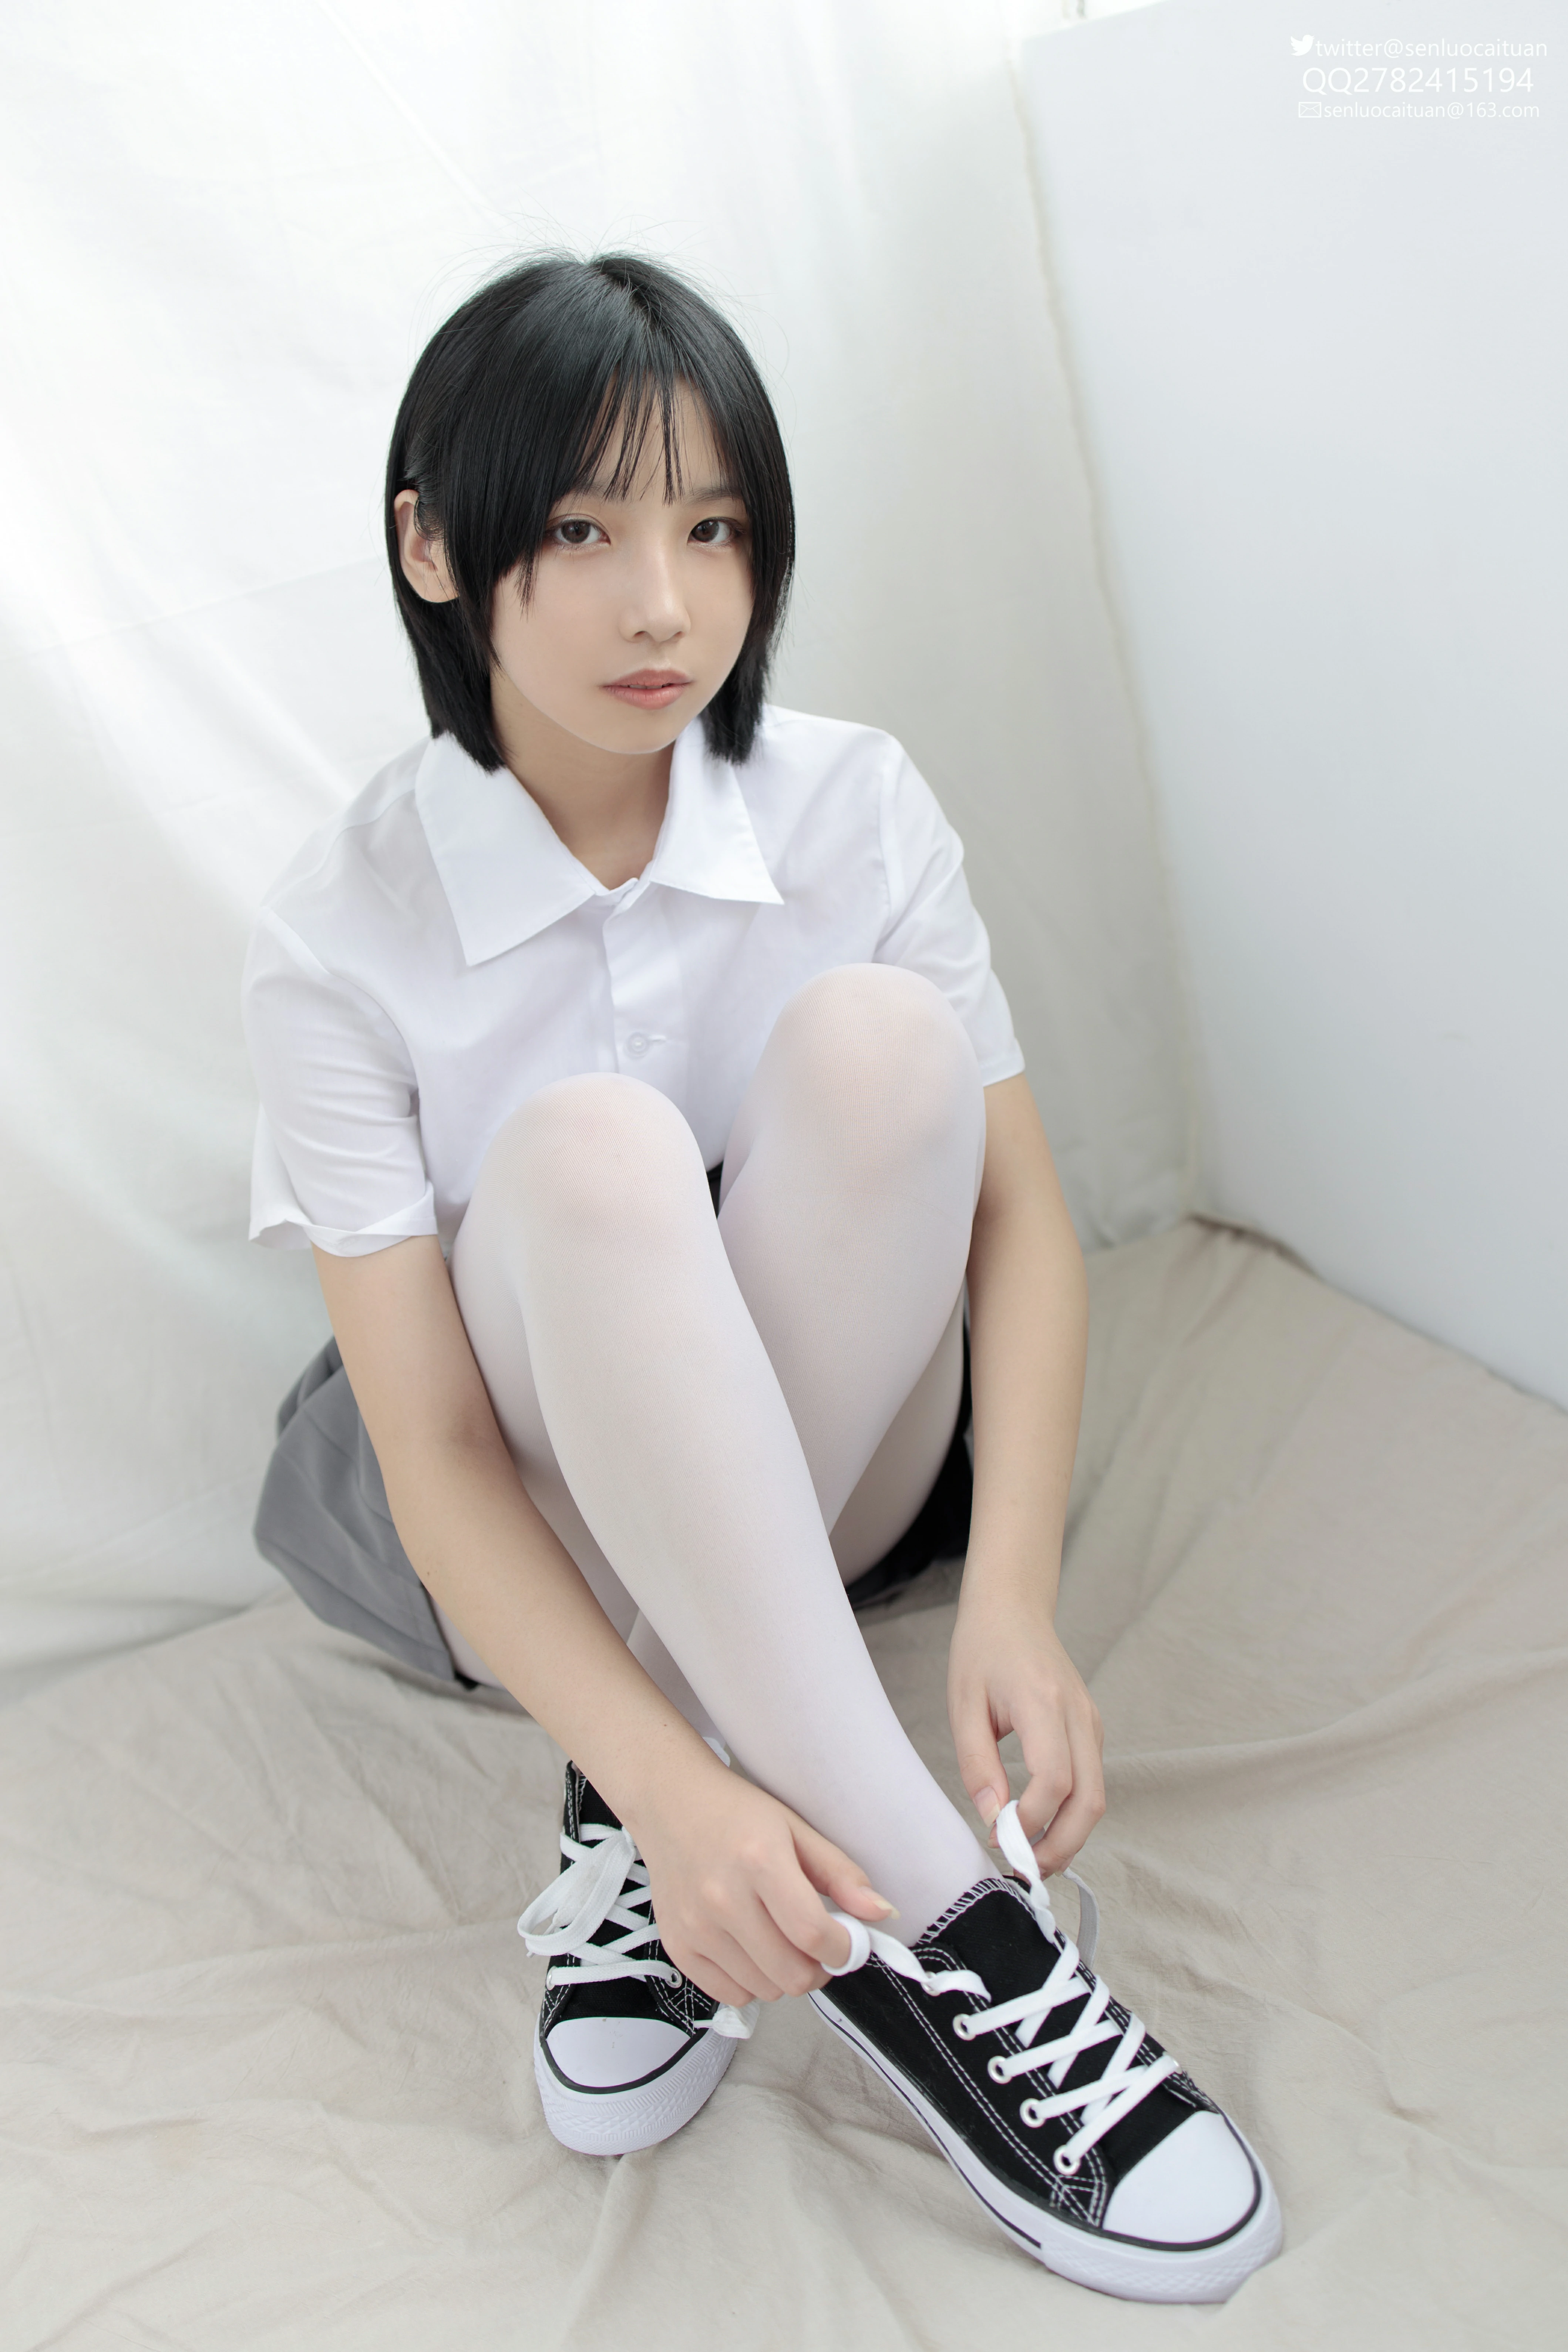 [森萝财团]JKFUN-GG-03 希晨《JK制服》白色衬衫与灰色短裙加白色丝袜美腿性感私房写真集,